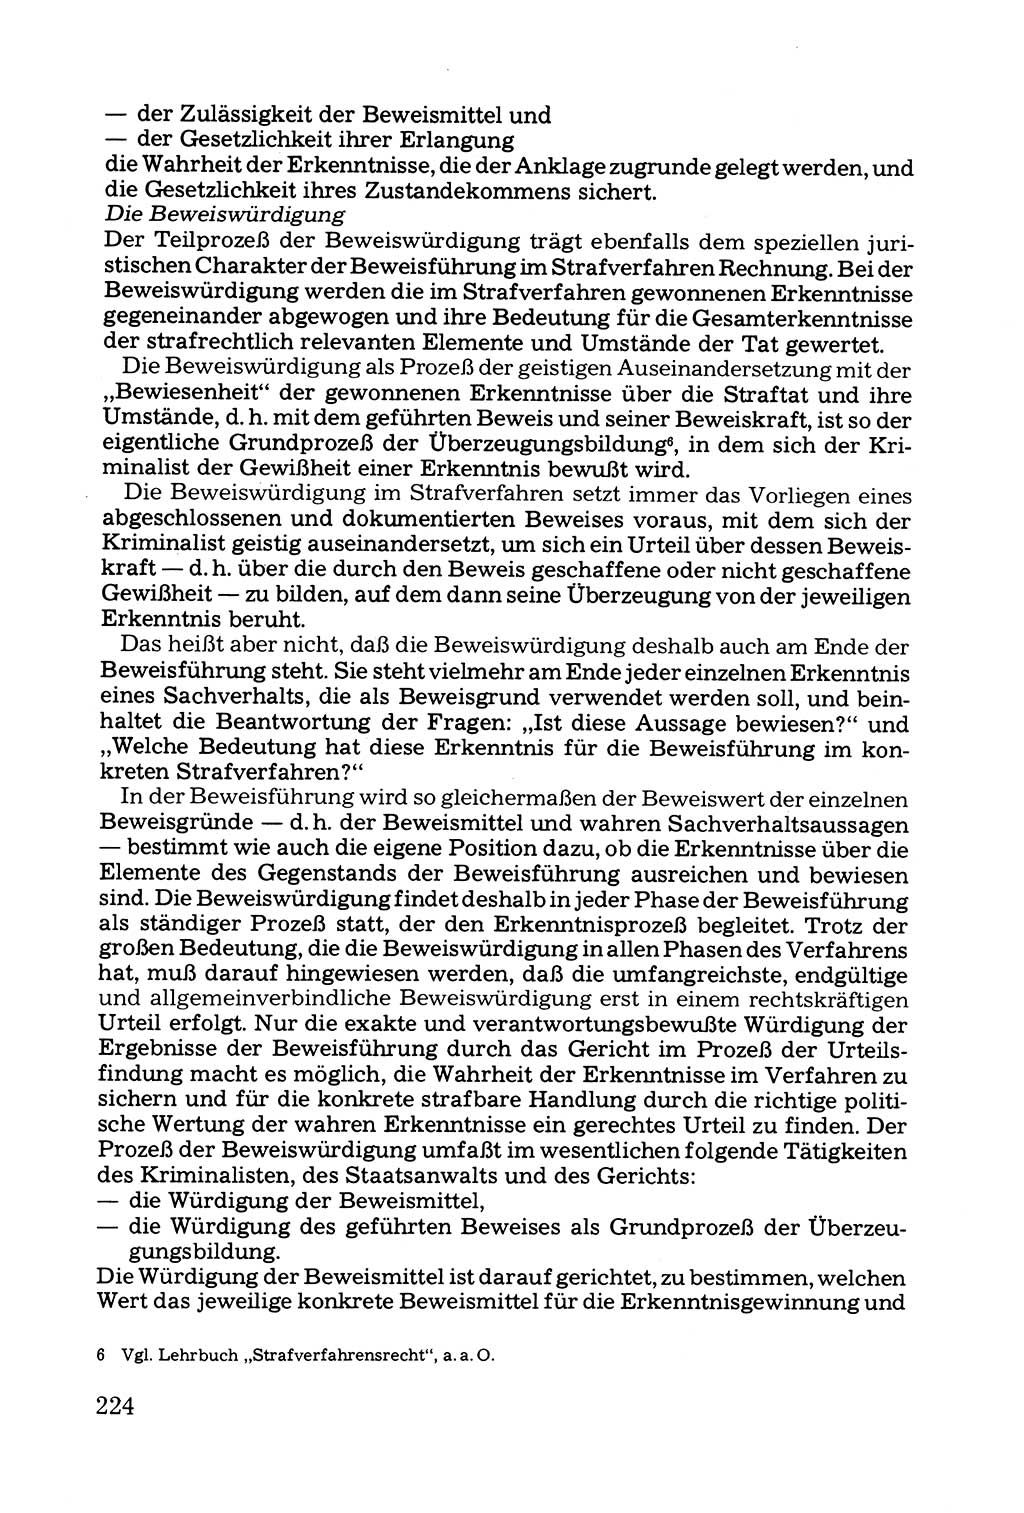 Grundfragen der Beweisführung im Ermittlungsverfahren [Deutsche Demokratische Republik (DDR)] 1980, Seite 224 (Bws.-Fhrg. EV DDR 1980, S. 224)